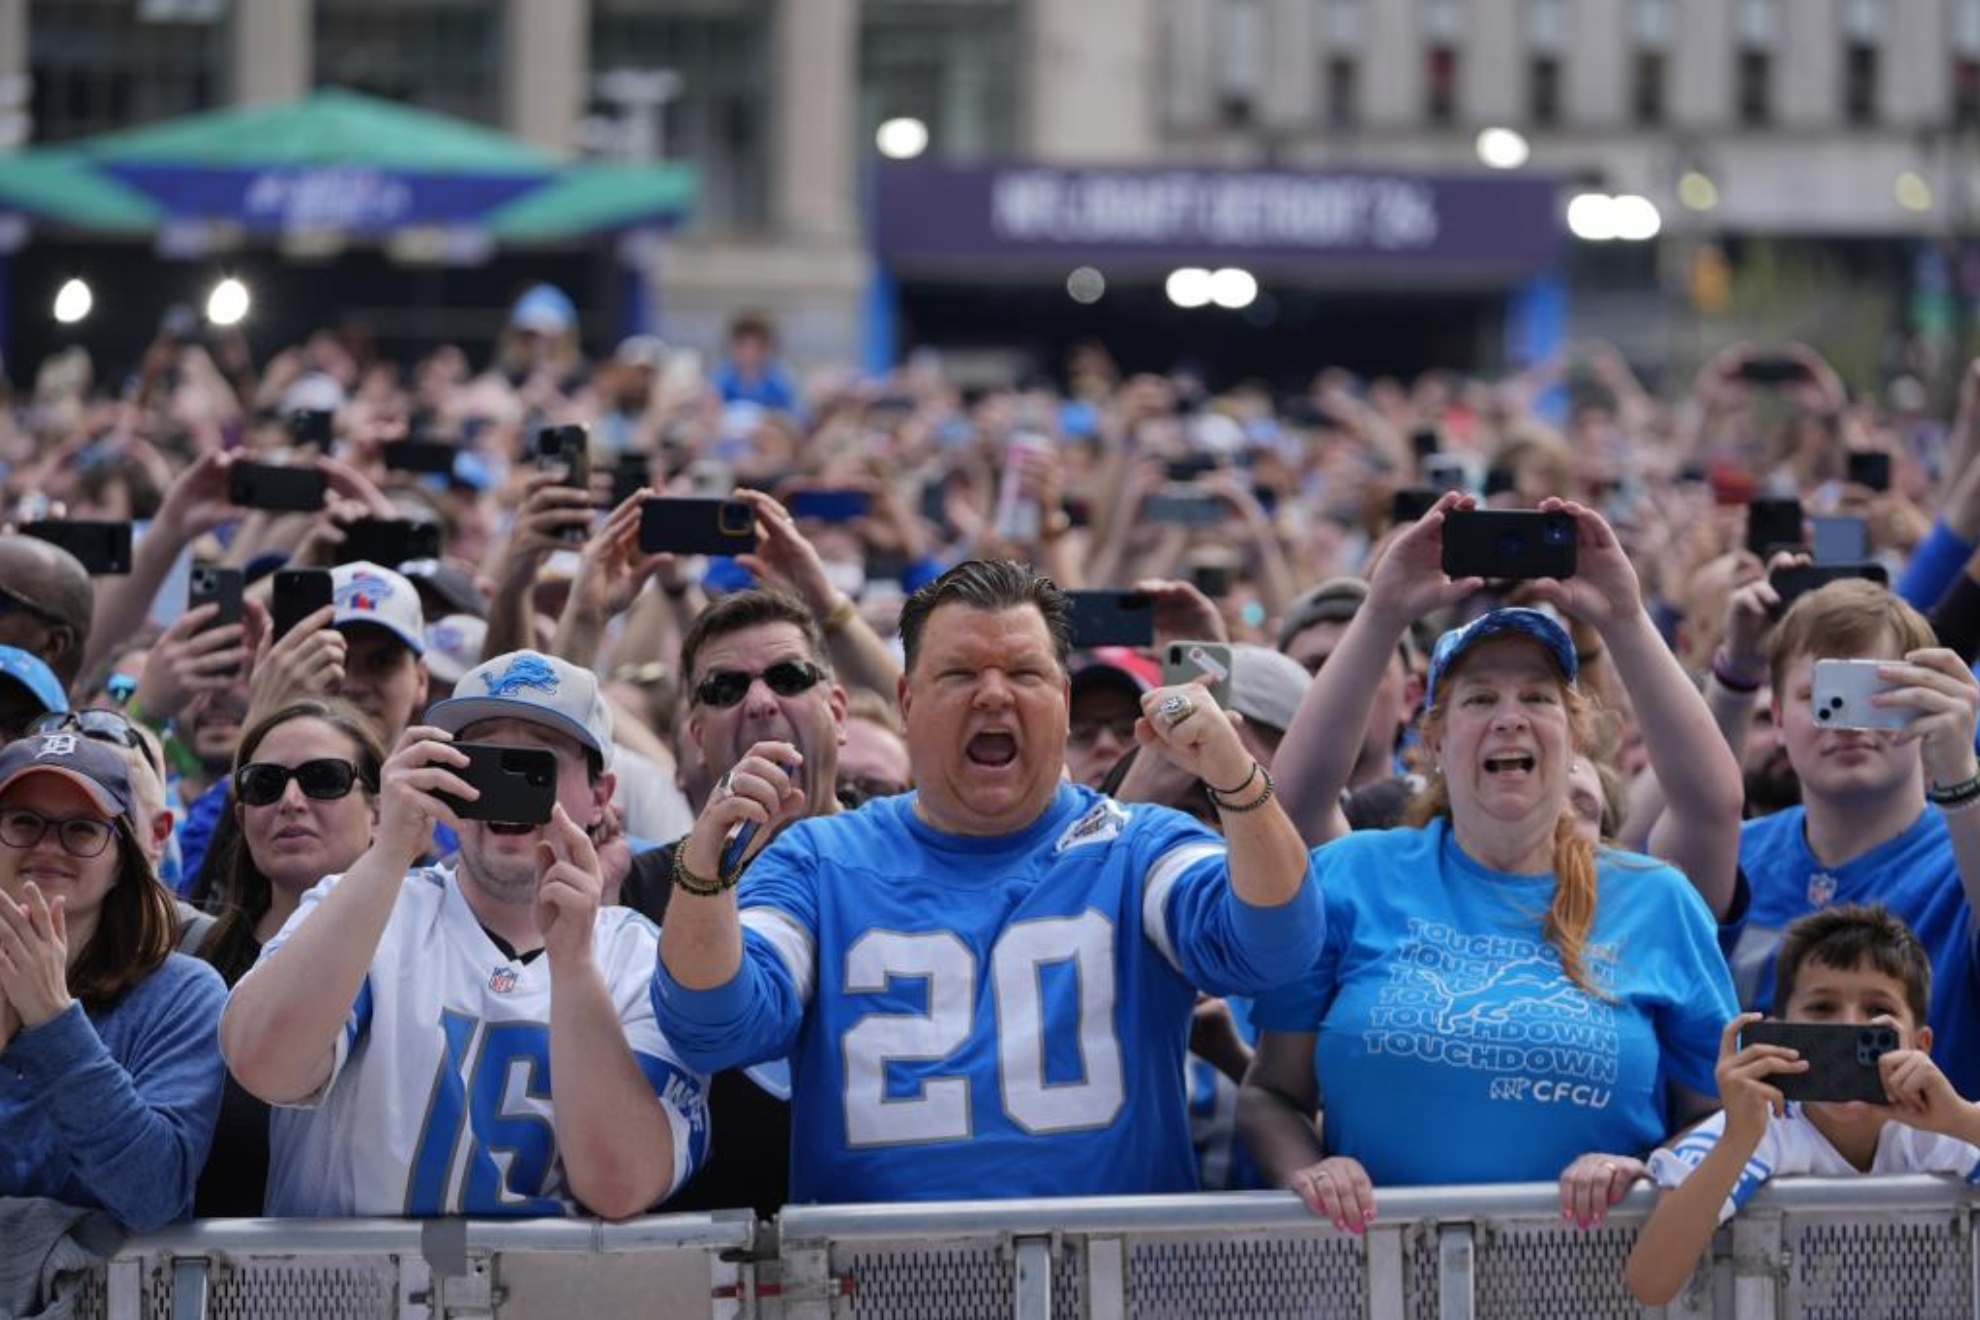 El Draft de la NFL en Detroit bate el rcord de asistencia con 700.000 personas